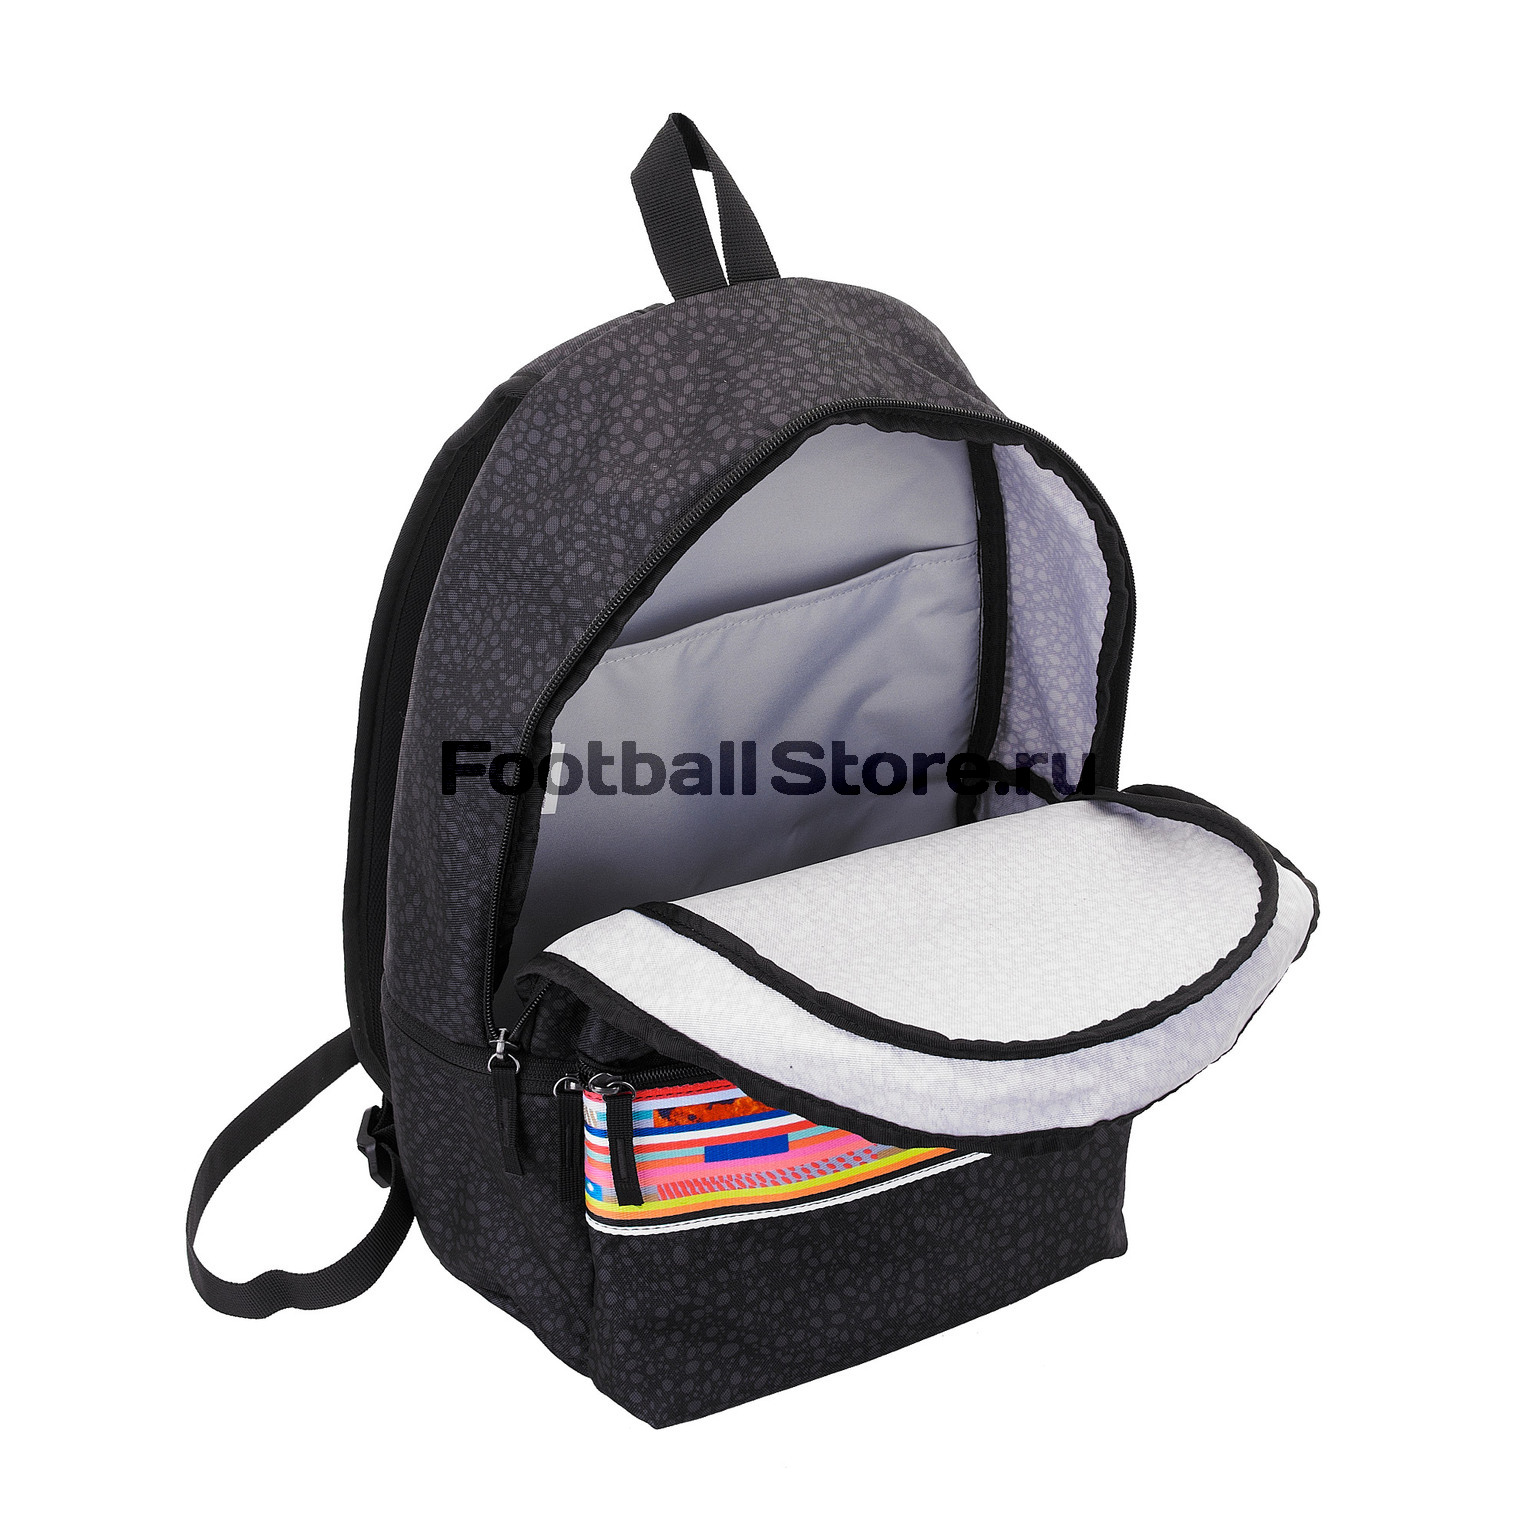 Рюкзак Nike Mercurial Backpack BA5791-010